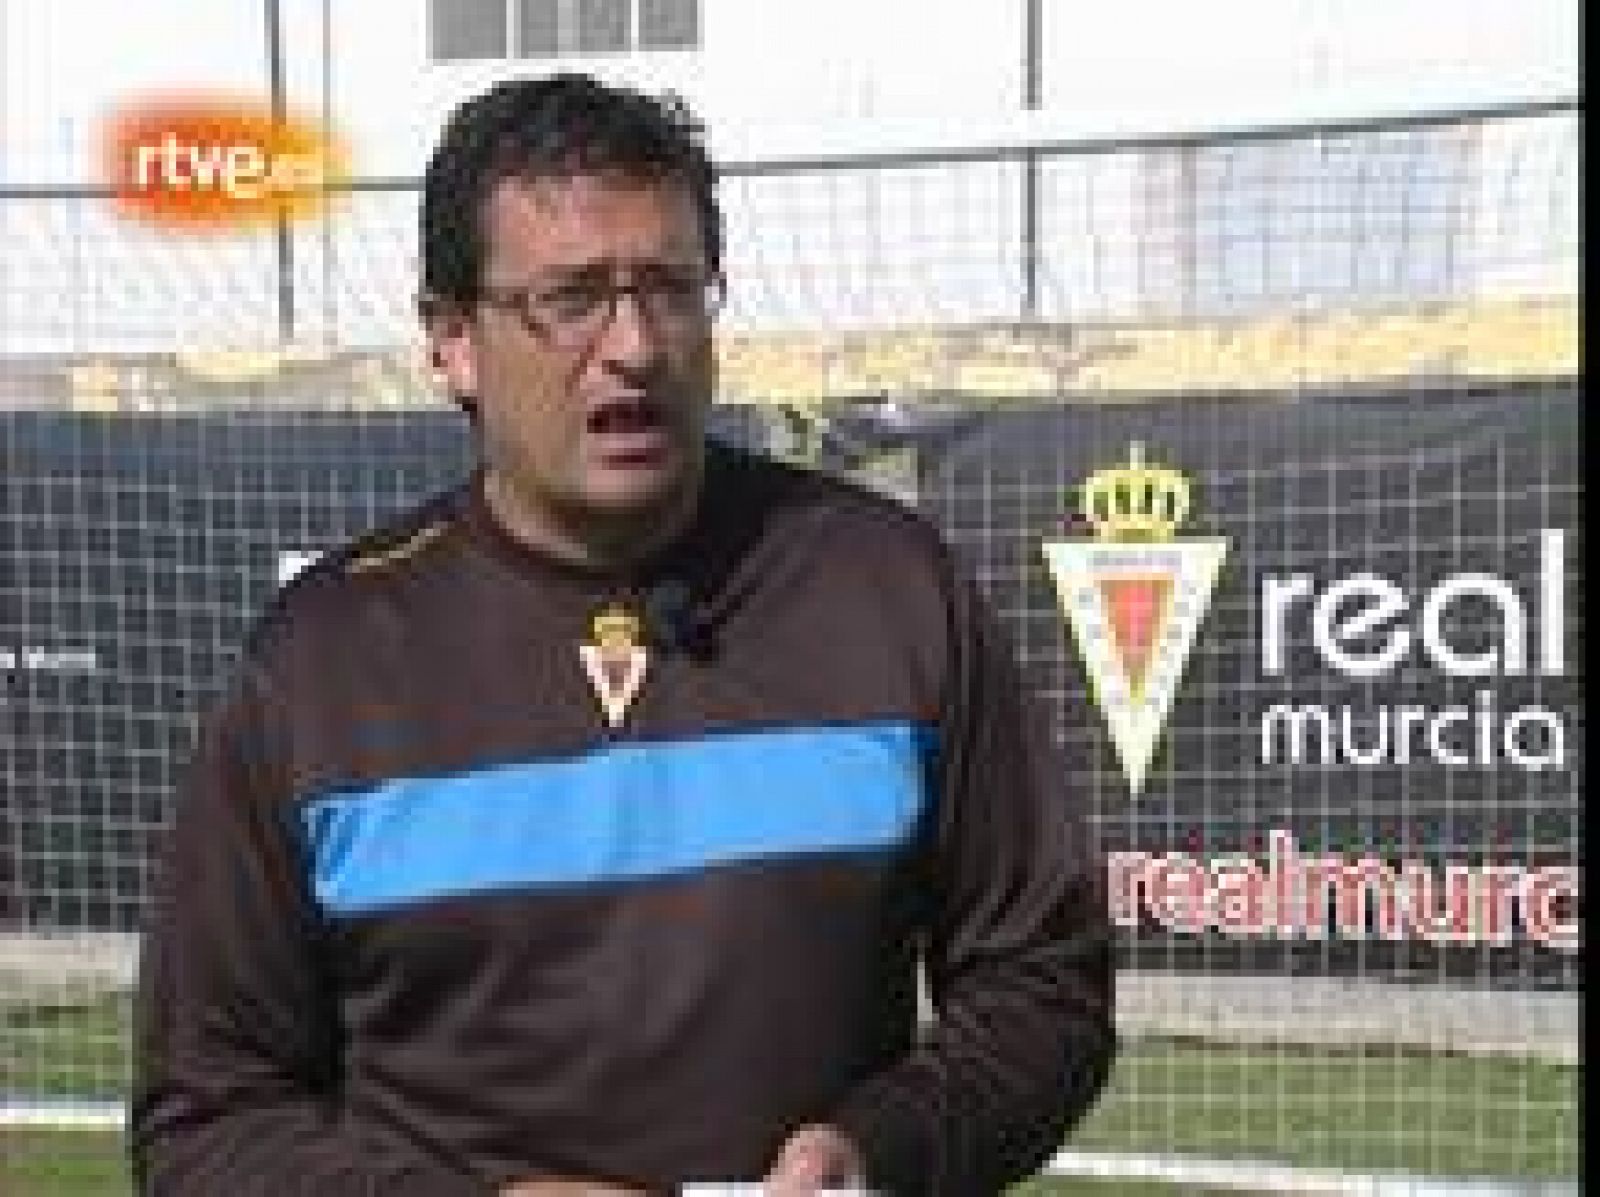  El entrenador del Real Murcia, Iñaki Alonso, cree que es posible eliminar al Real madrid de la Copa del Rey. Hace dos años, cuando entrenaba al Real Irún ya dejó en la cuneta al club blanco.